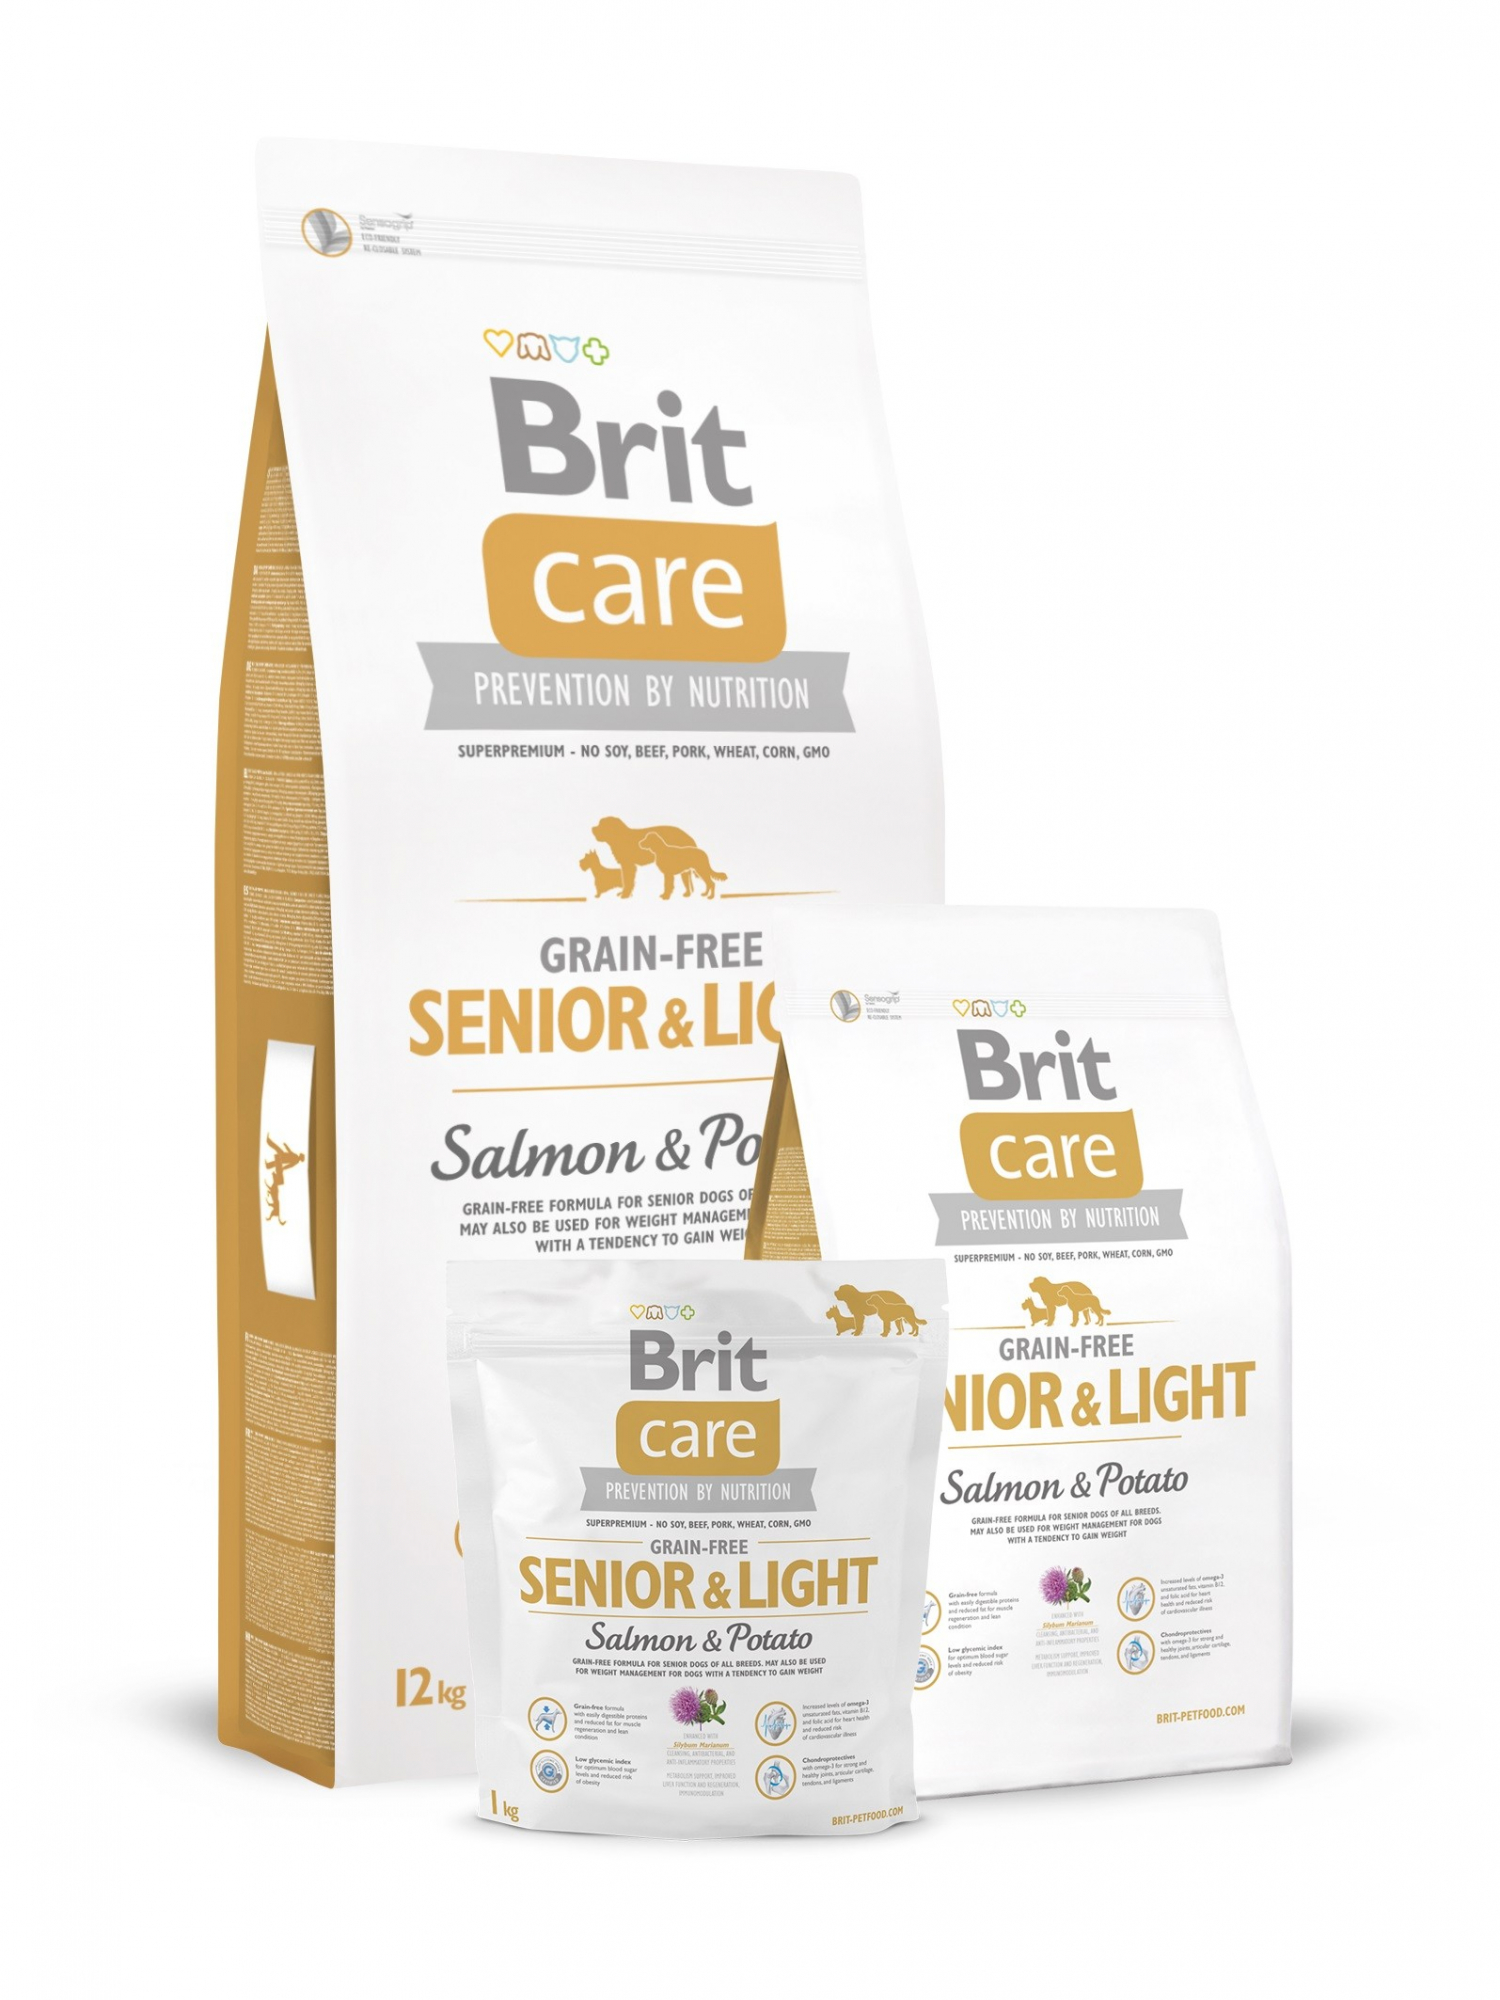 BRIT CARE Senior & Light Salmón y Patata Grain Free pienso para perros